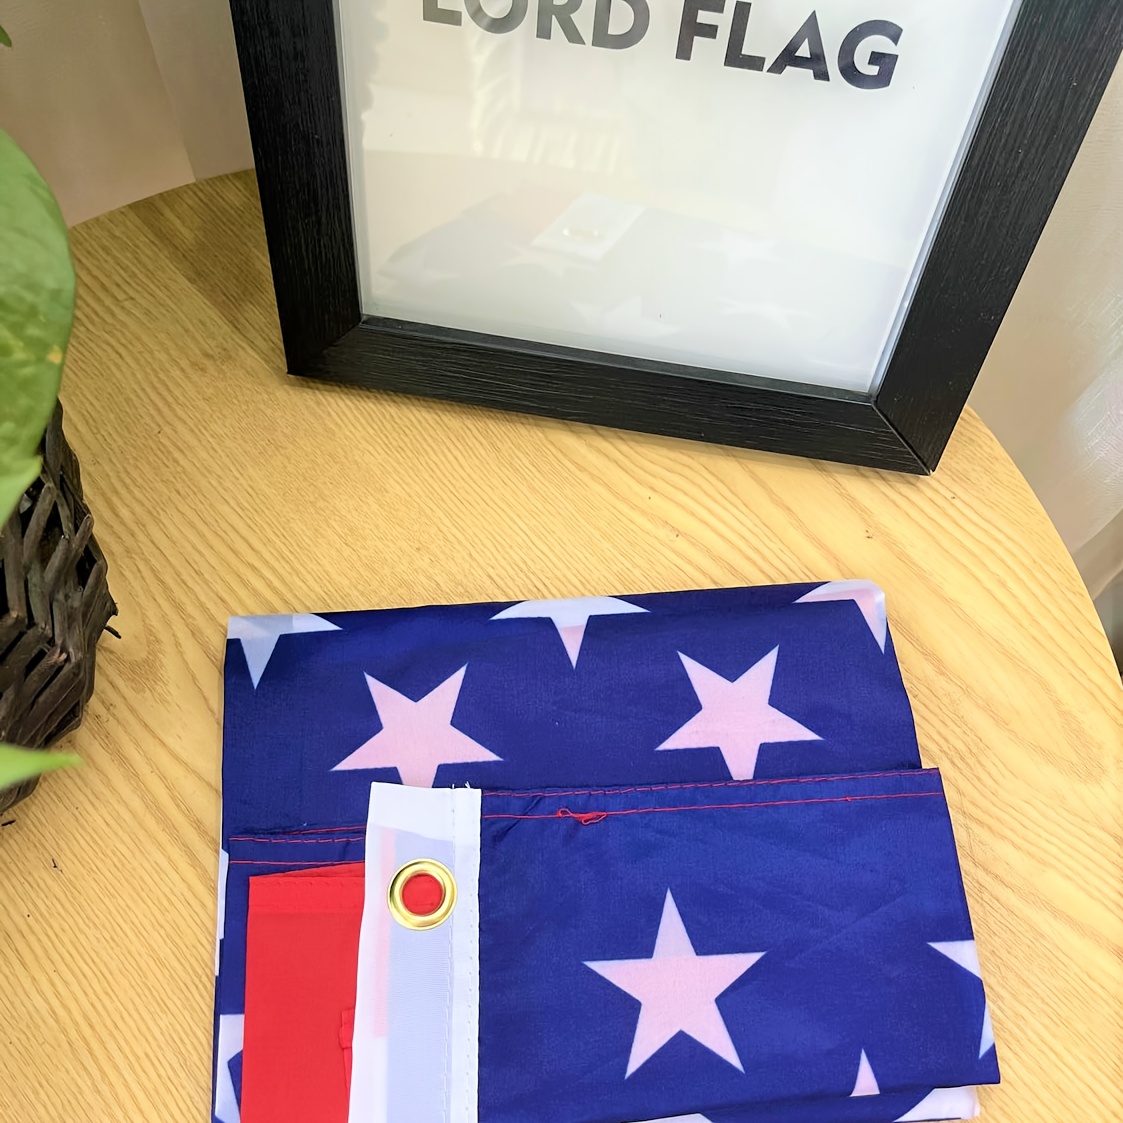 Holland Flag Size 150 x 90 Cm.